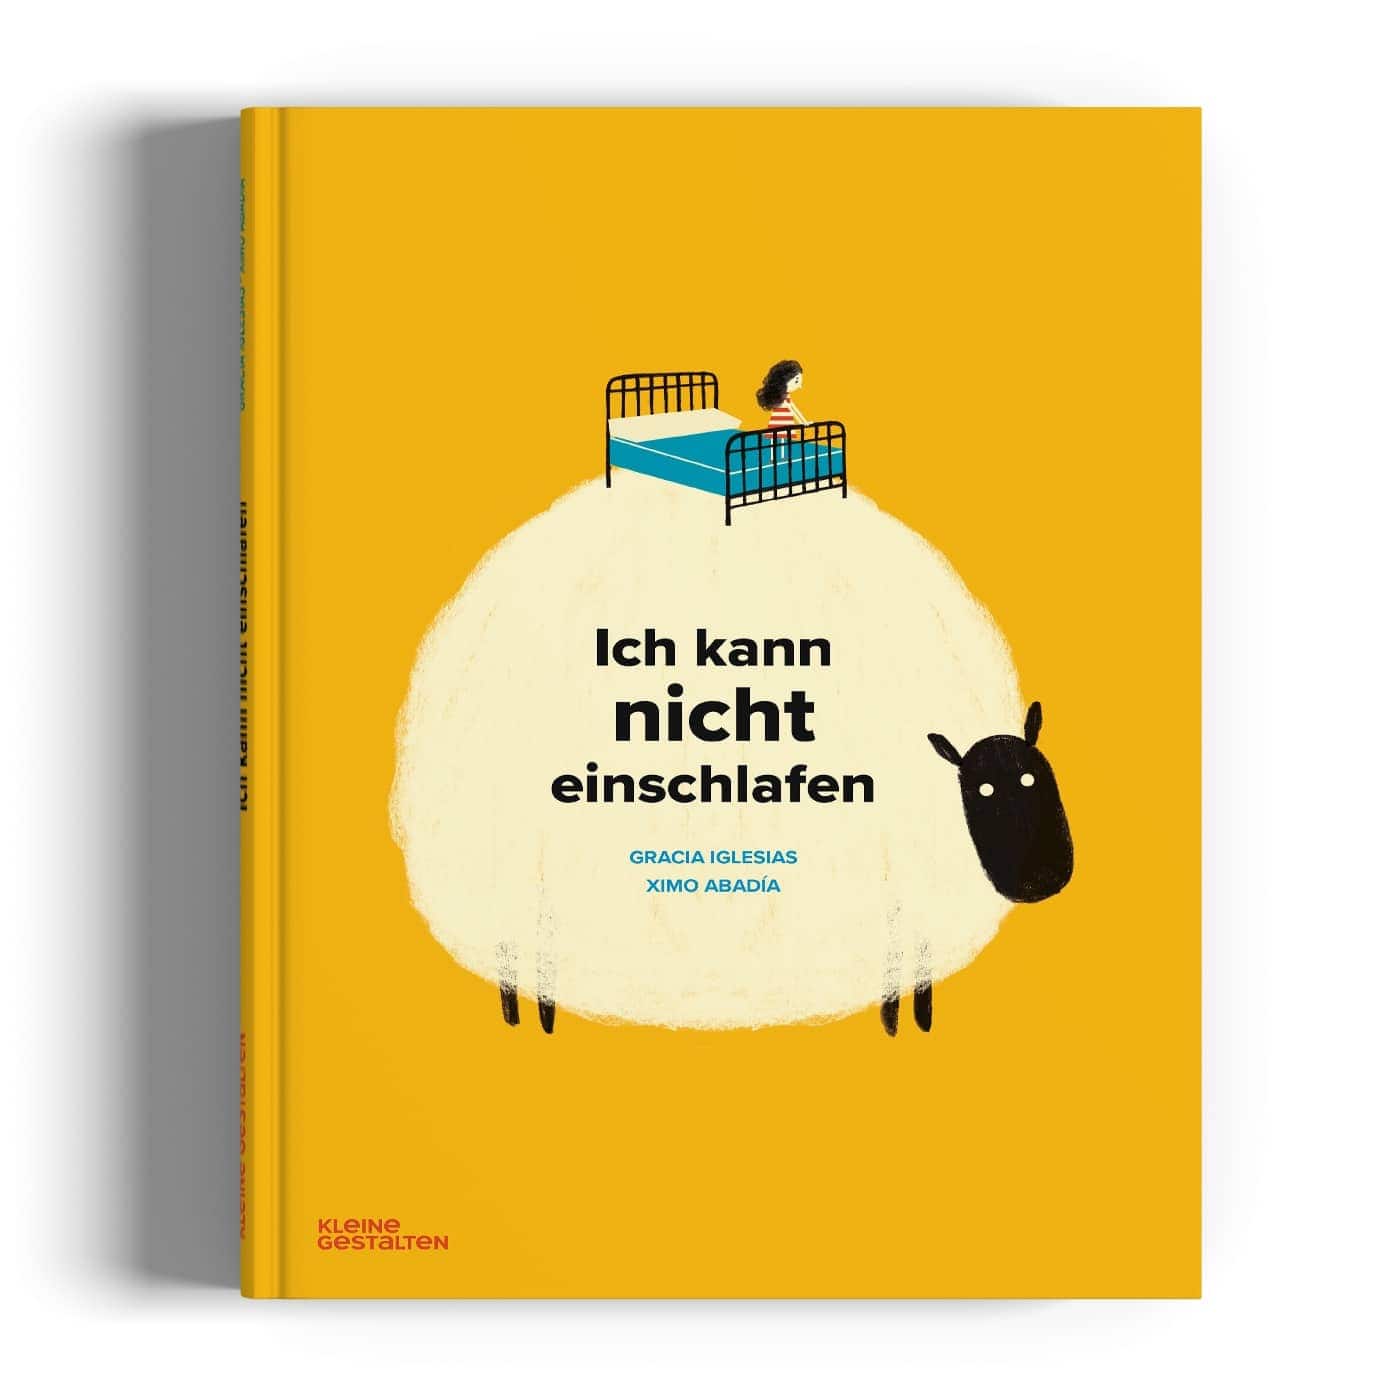 Kinderbuch-Tipps im Herbst 2022: ich kann nicht einschlafen // HIMBEER